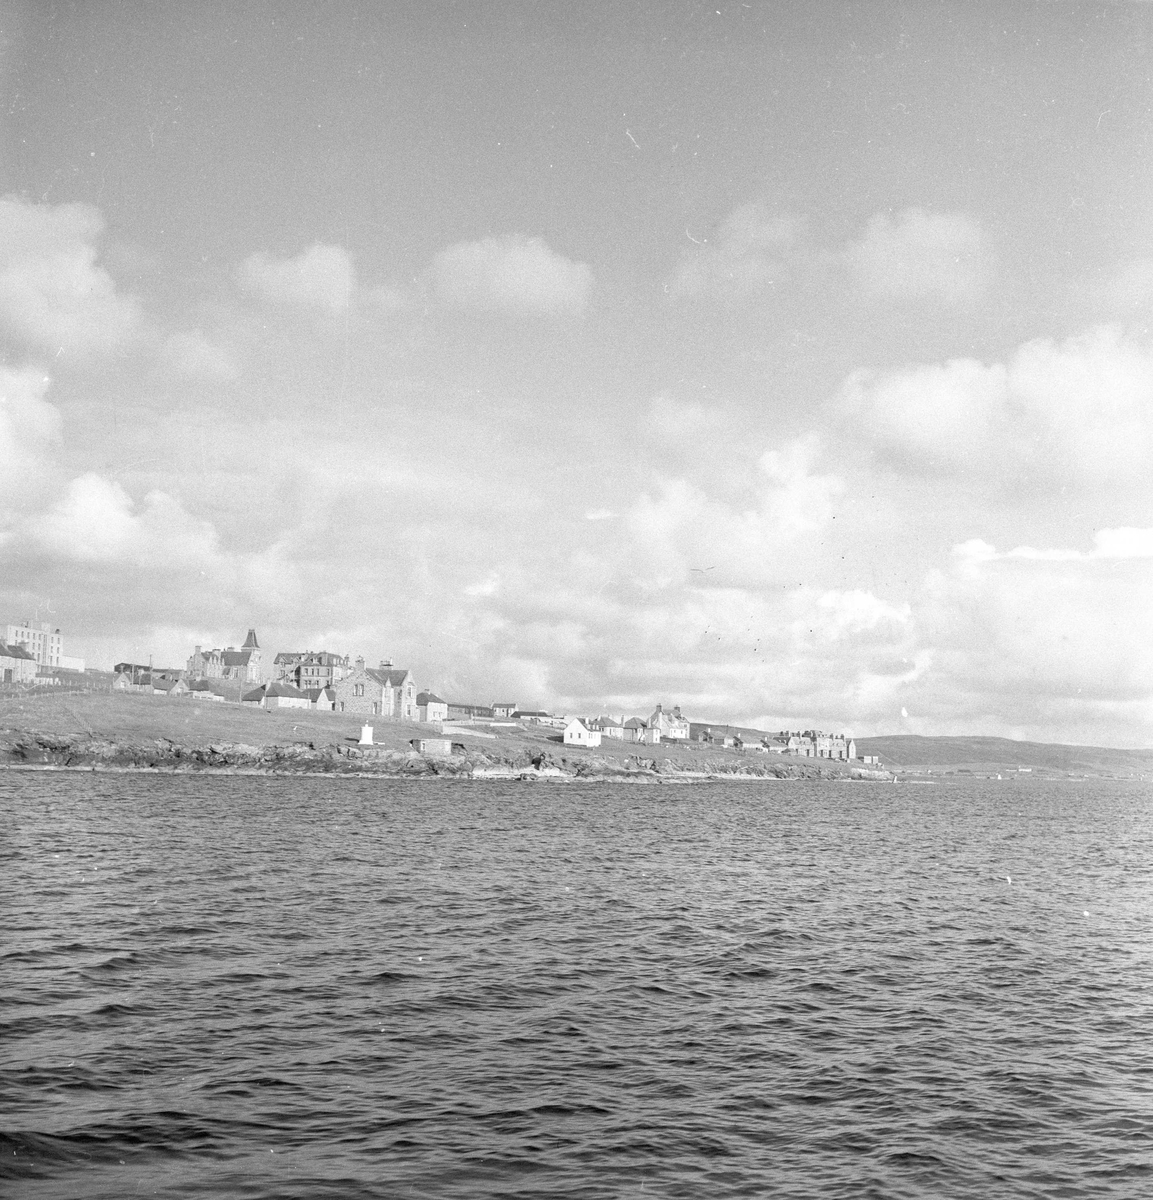 Pigghåfiske på Shetland.
Shetland, 14-22. mai 1958, bebyggelsen på land sett fra sjøen.